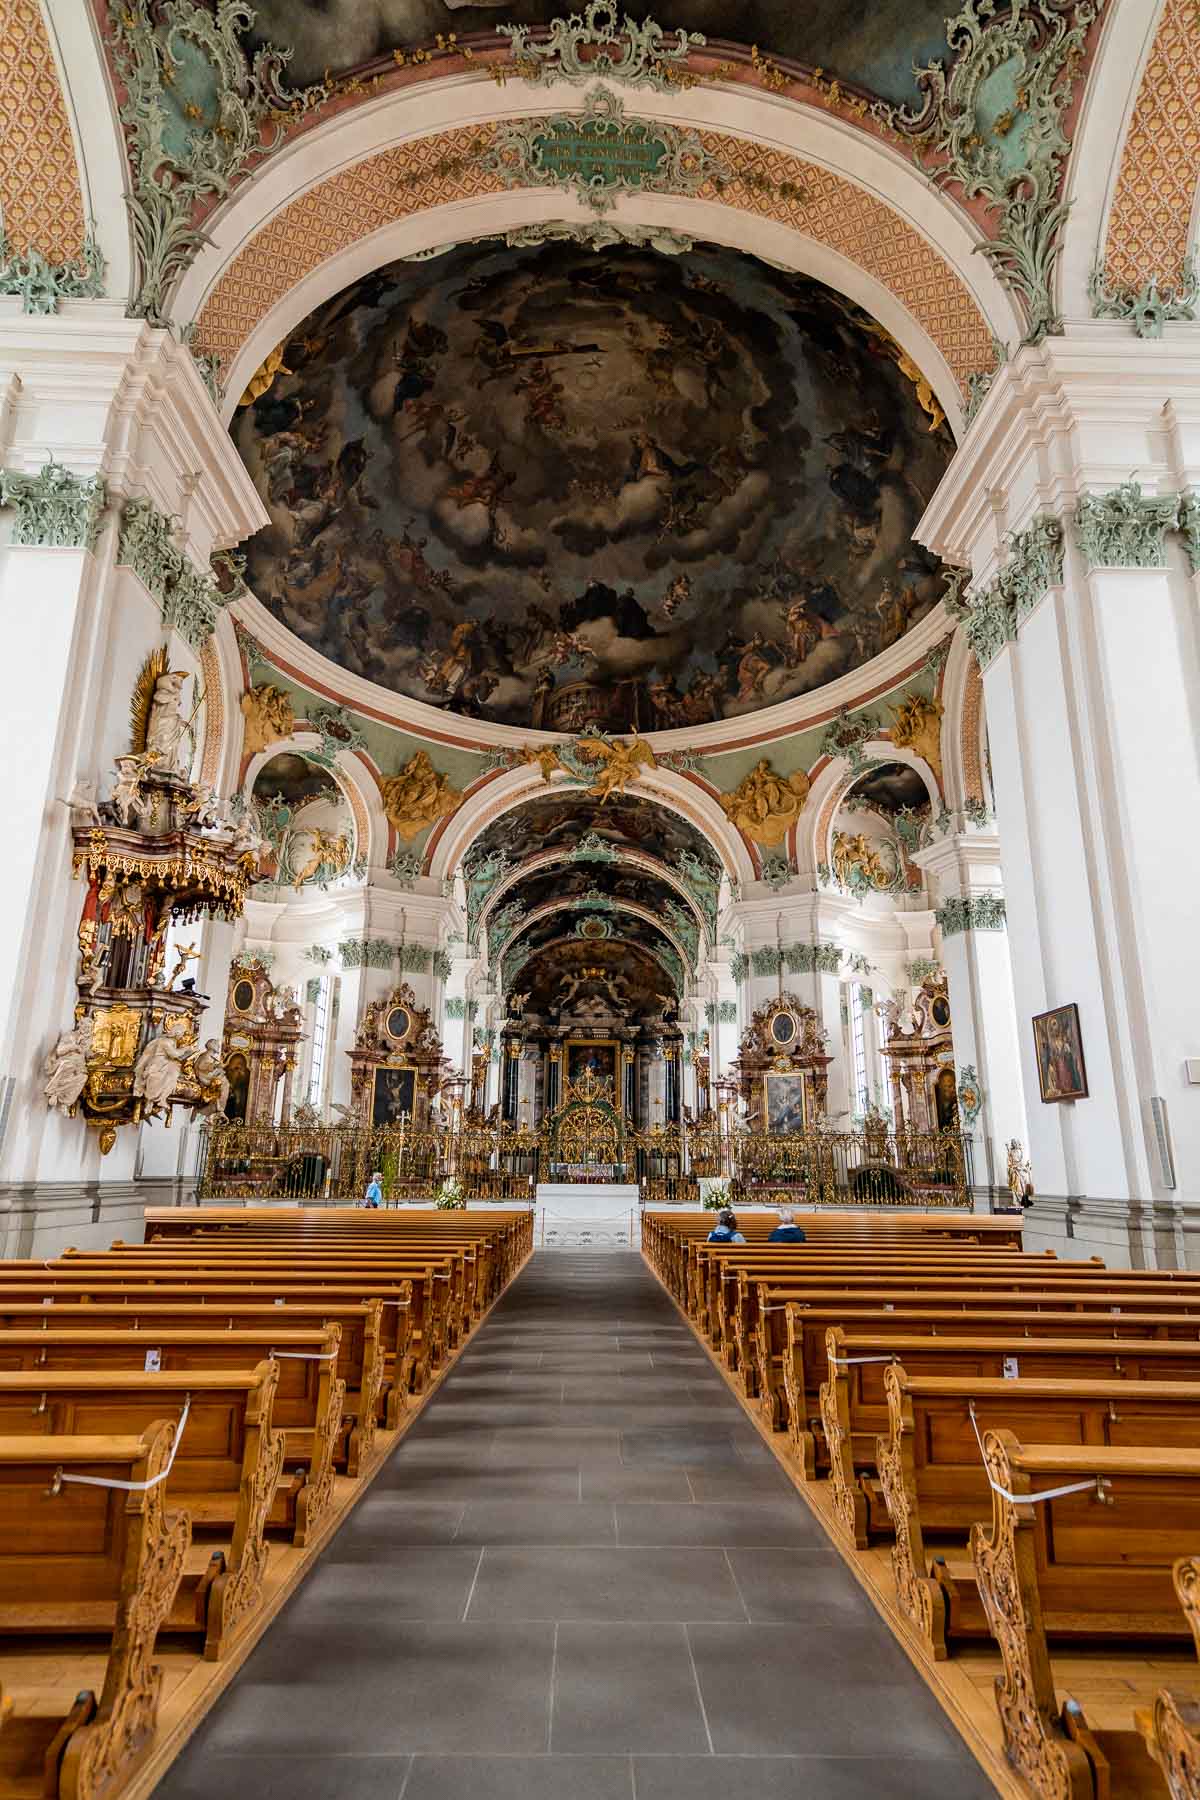 Abbey of St. Gallen